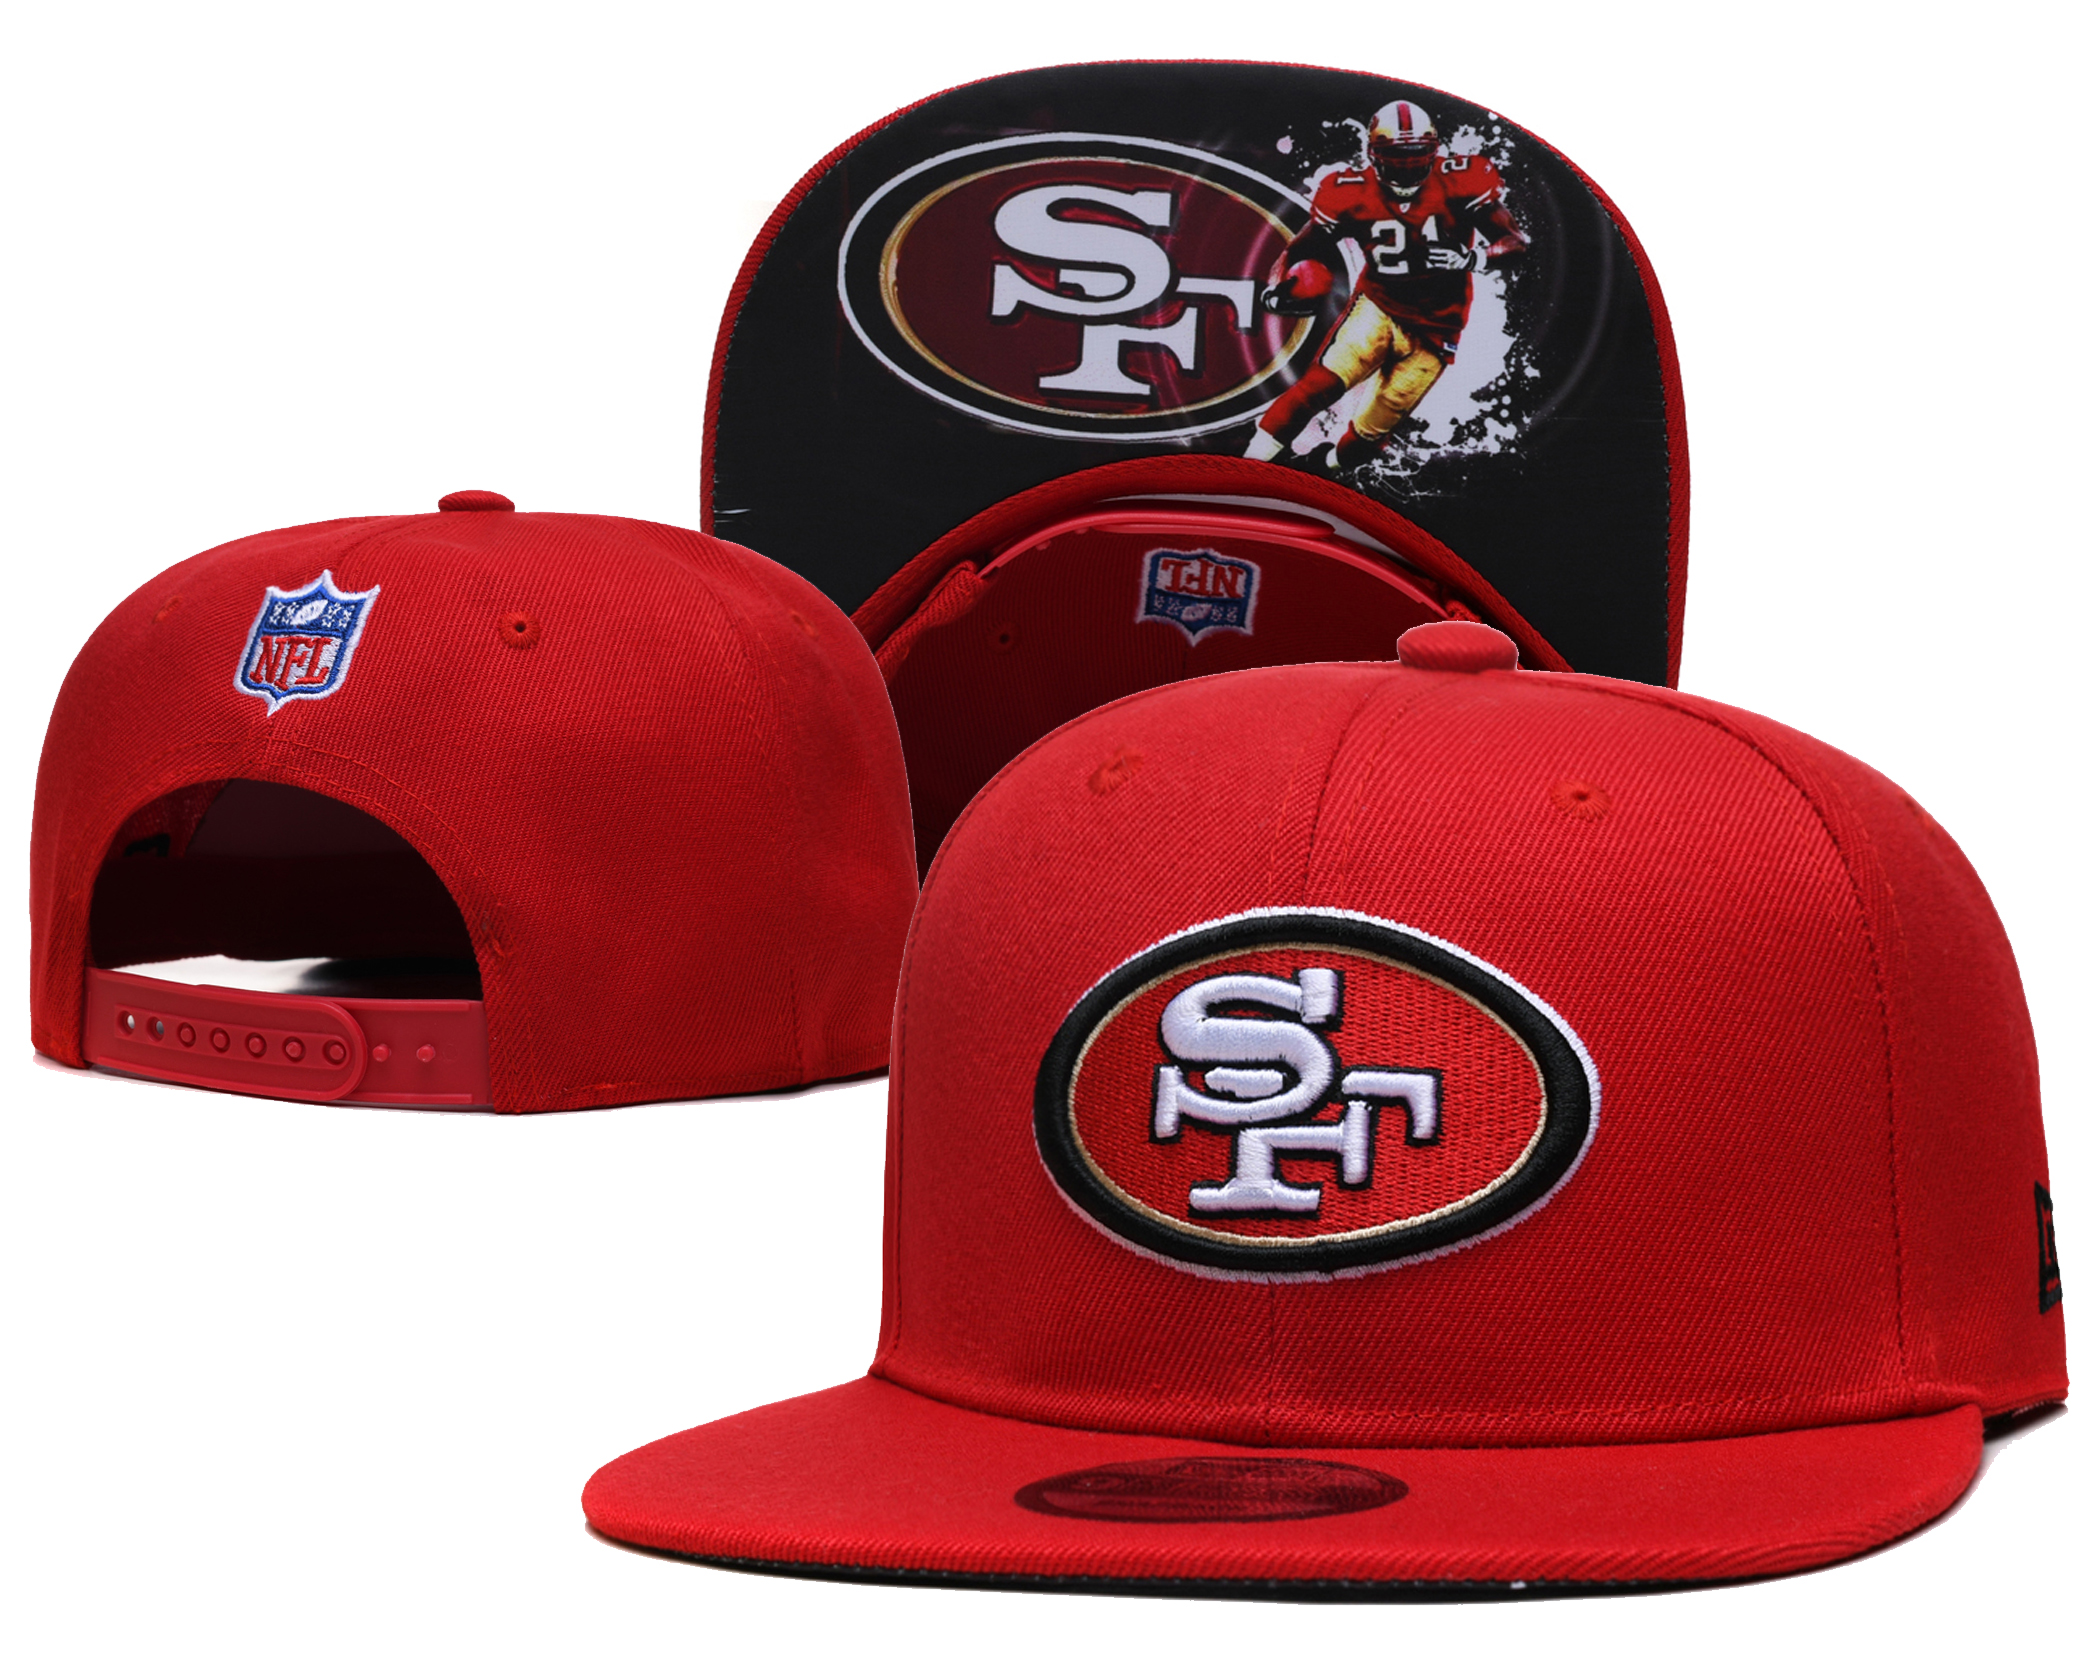 2021 NFL San Francisco 49ers 111 TX hat->nfl hats->Sports Caps